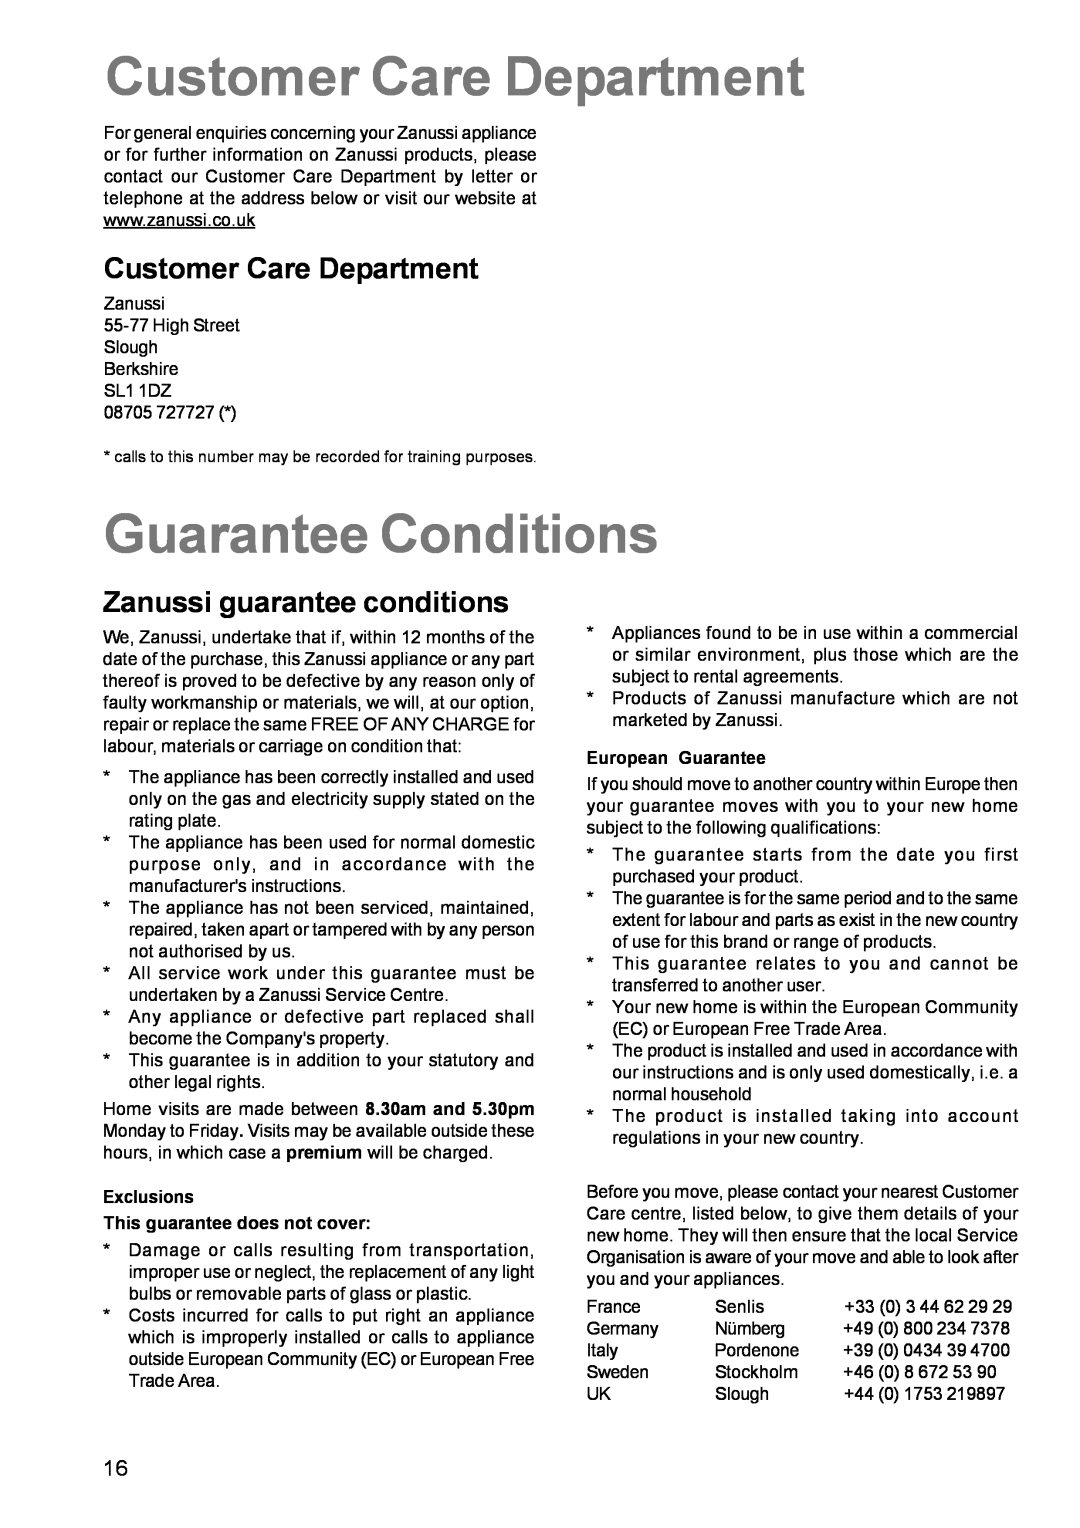 Zanussi ZCG 611 manual Customer Care Department, Guarantee Conditions, Zanussi guarantee conditions 